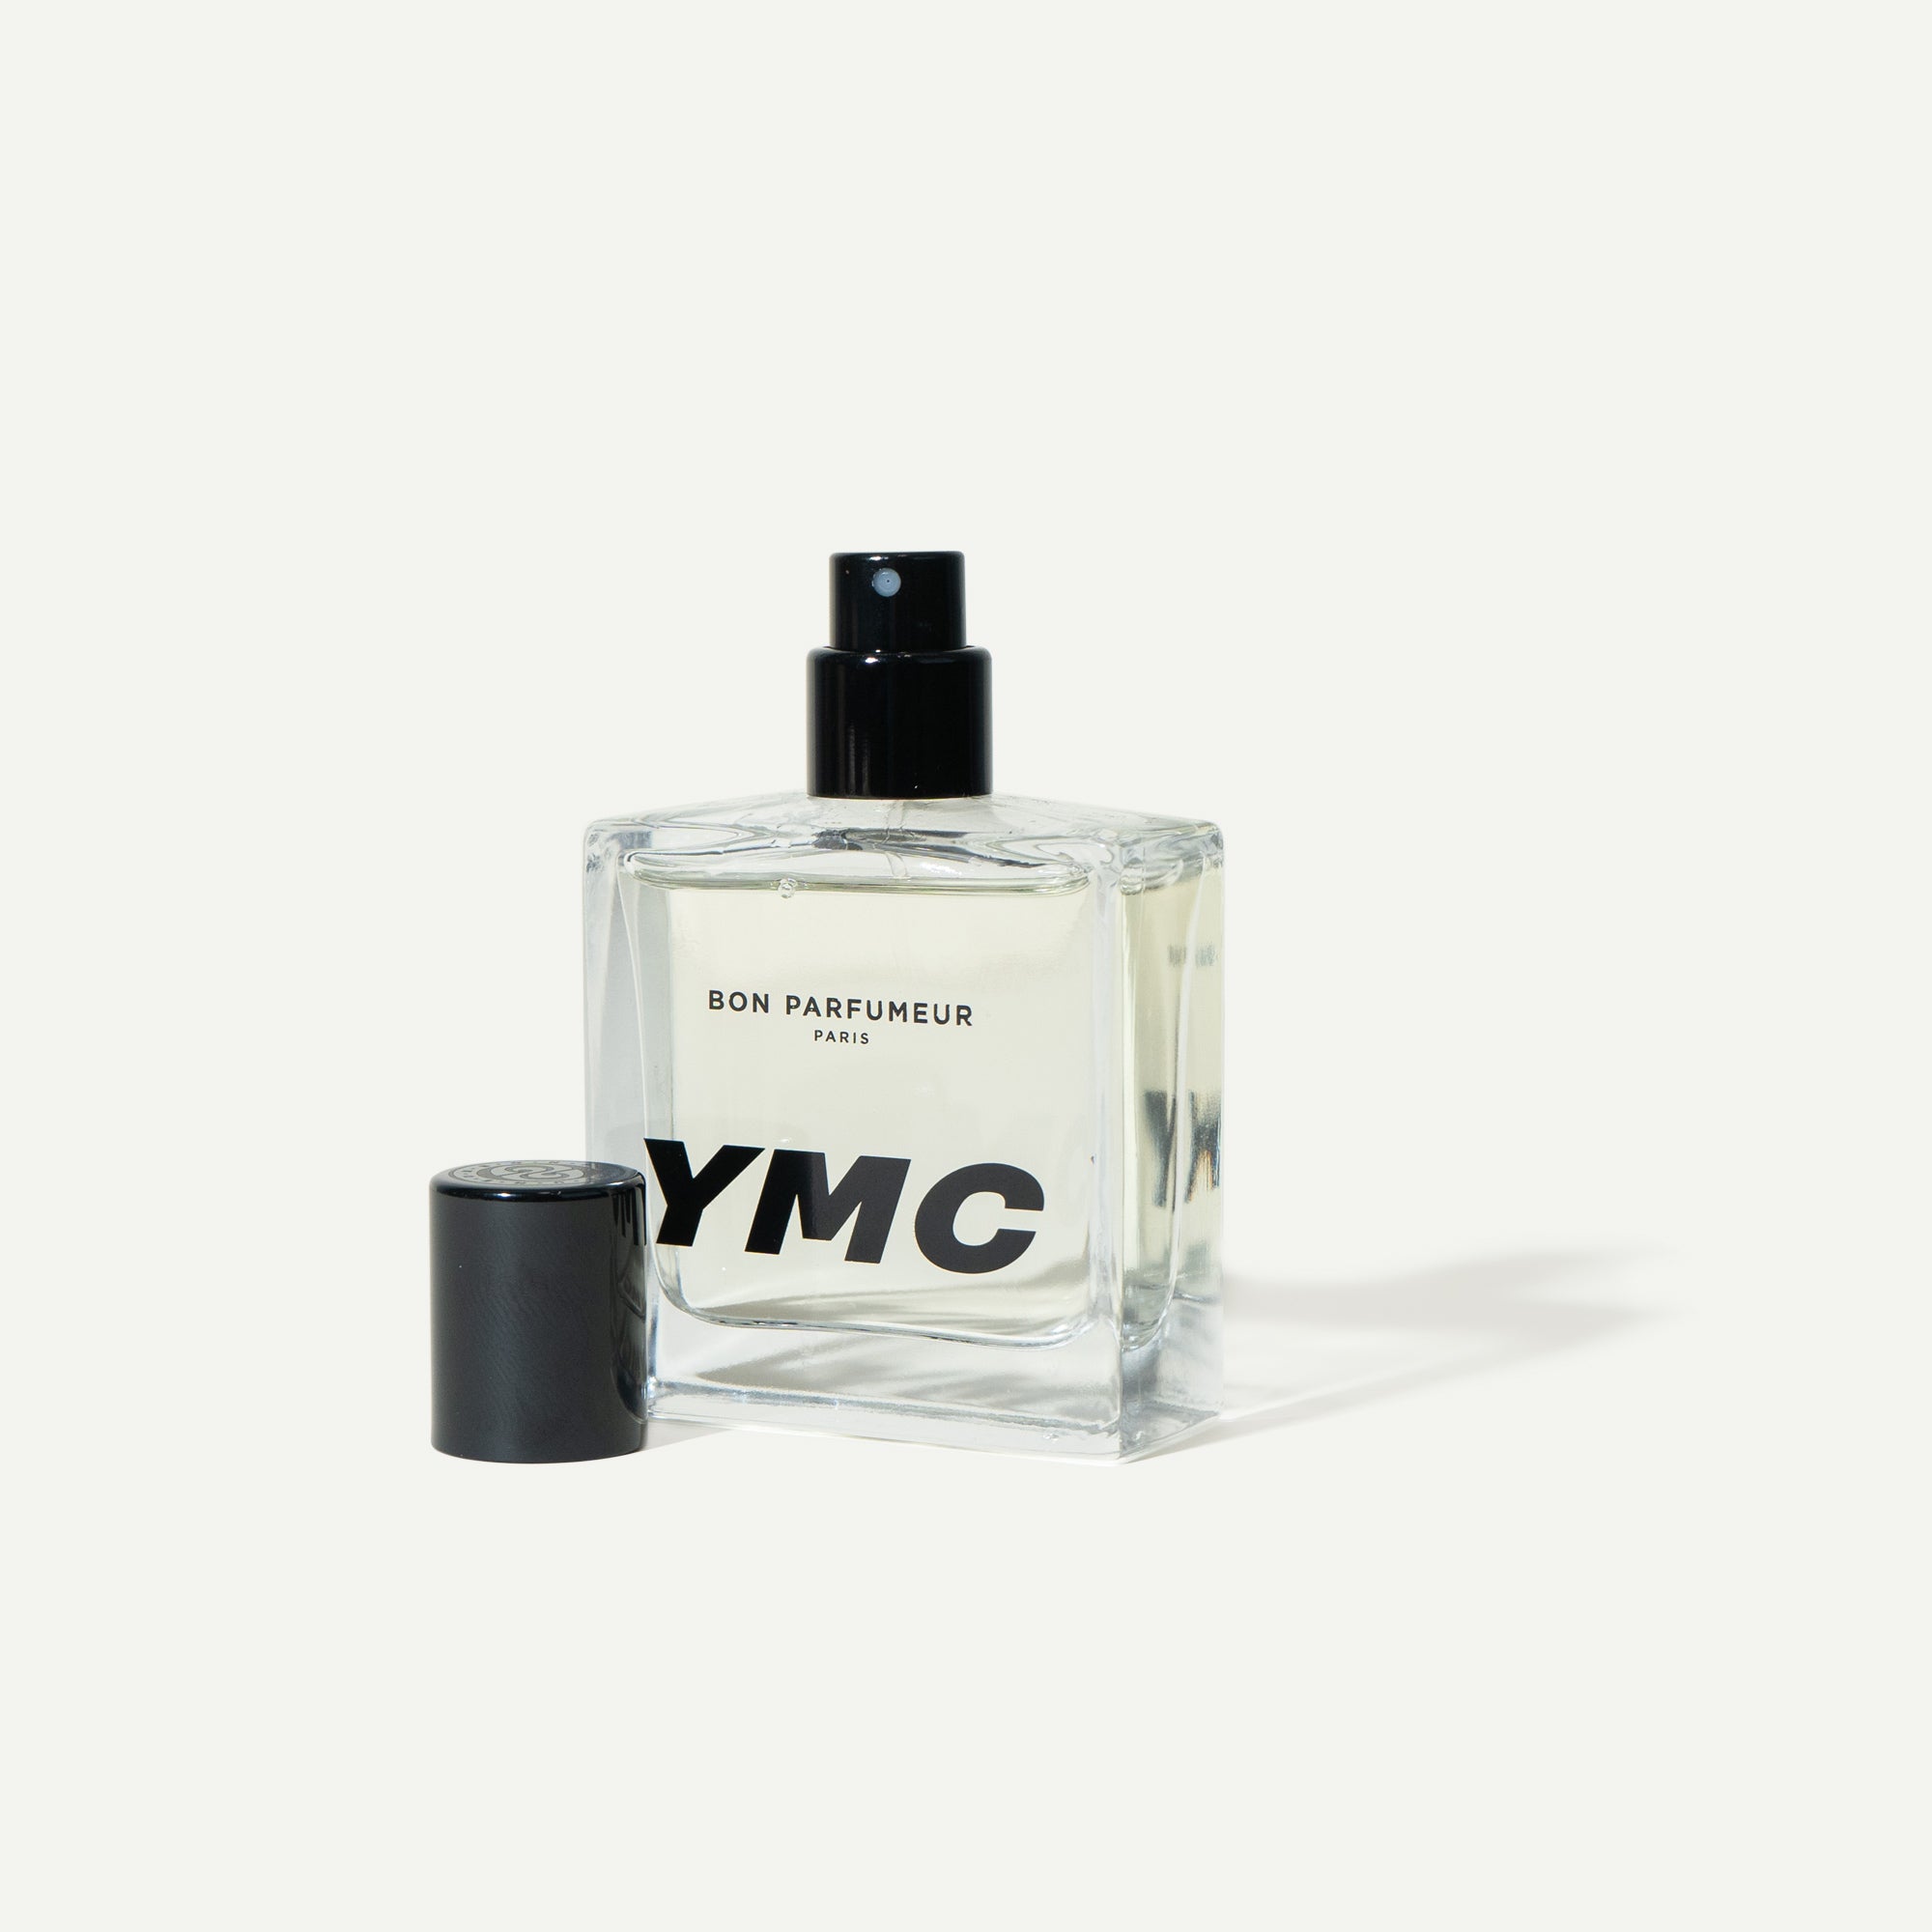 Bon Parfumeur YMC Eau De Parfum